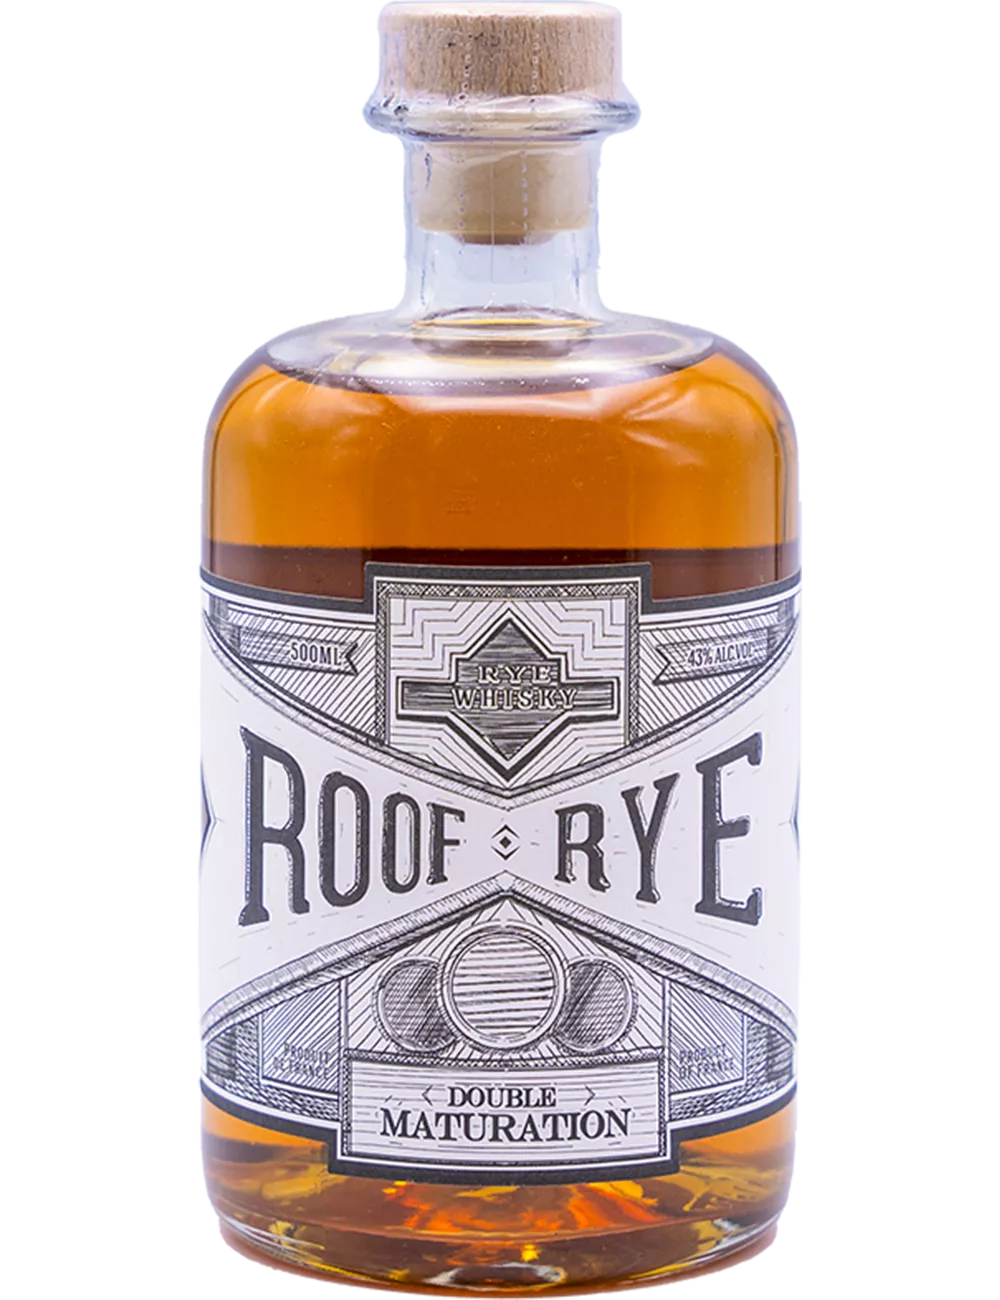 Ferroni - Roof - Rye whisky